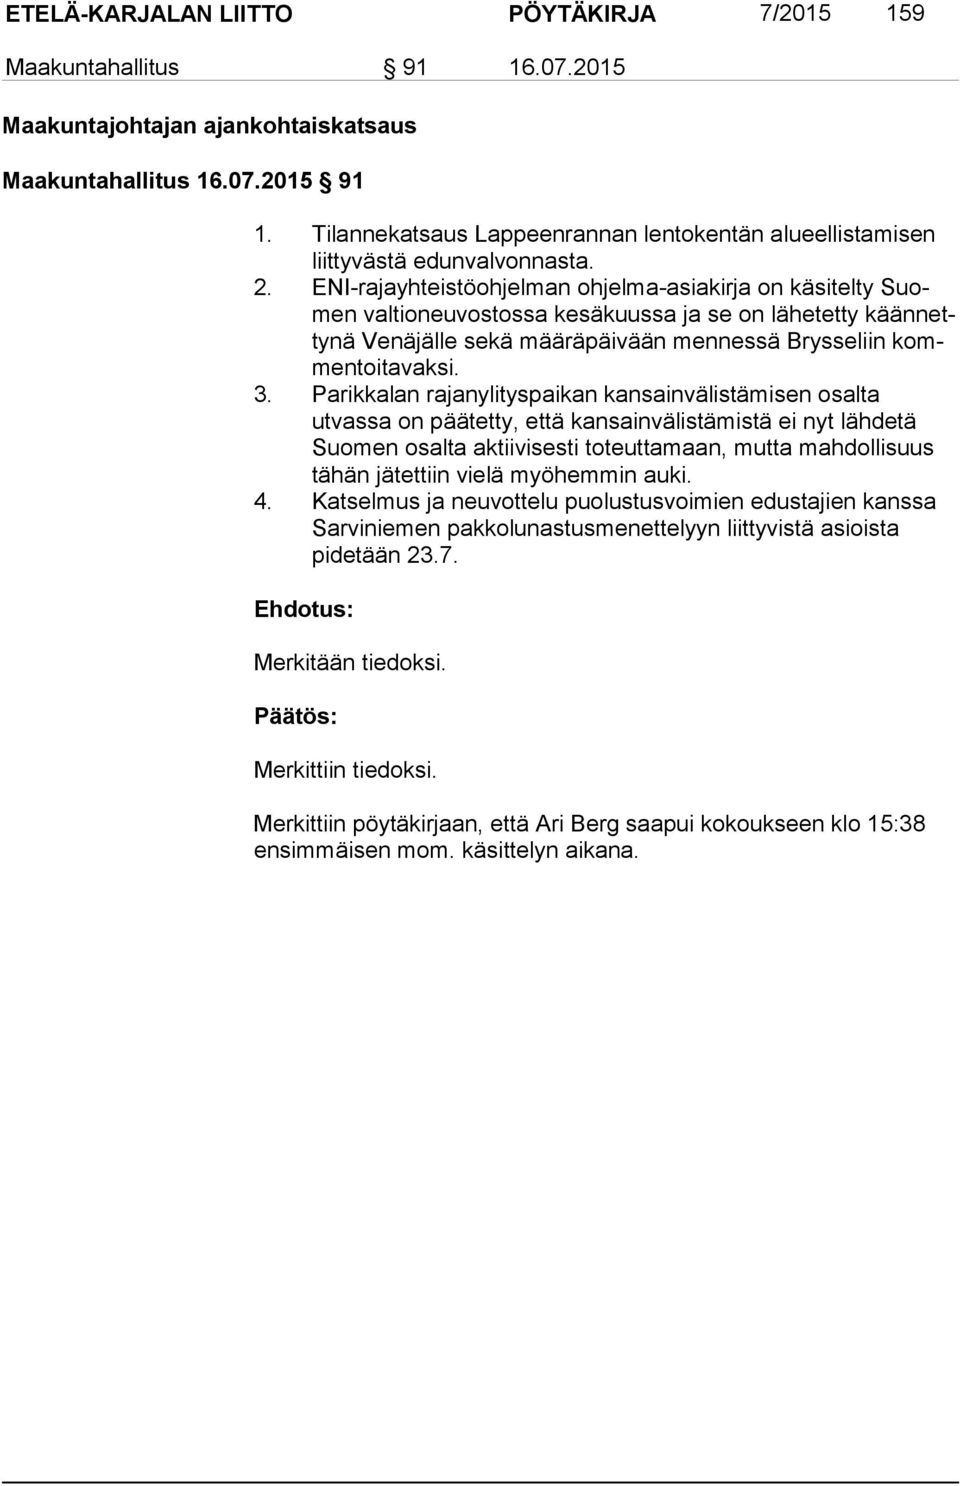 ENI-rajayhteistöohjelman ohjelma-asiakirja on käsitelty Suomen valtioneuvostossa kesäkuussa ja se on lähetetty kään netty nä Venäjälle sekä määräpäivään mennessä Brysseliin kommen toi ta vak si. 3.